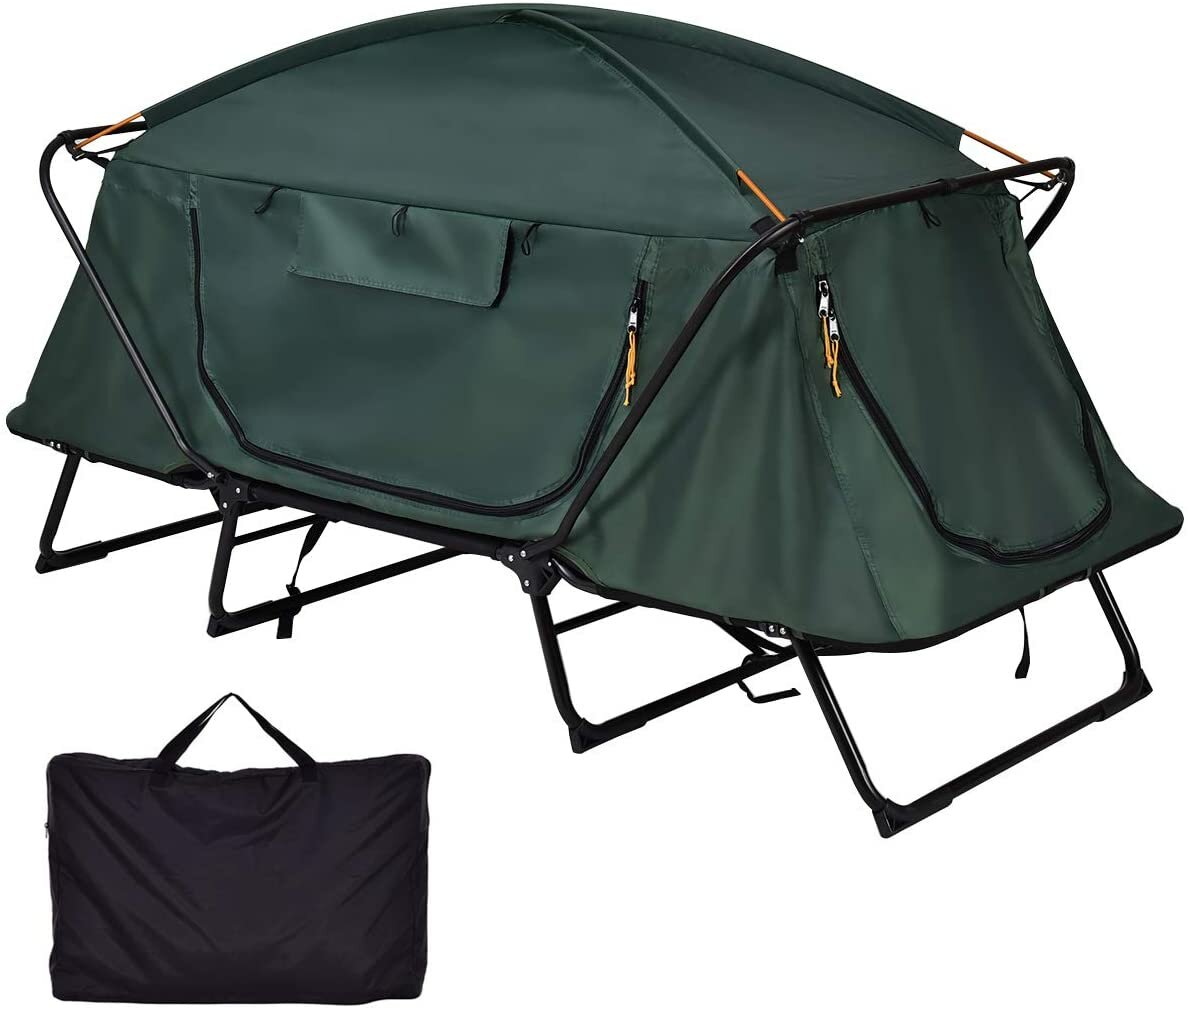 Tente de camping pour 2 personnes hors sol pliable imperméable à double couche protection contre le froid anti-vent pare-soleil dôme pour la randonnée et les voyages avec sac de transport.